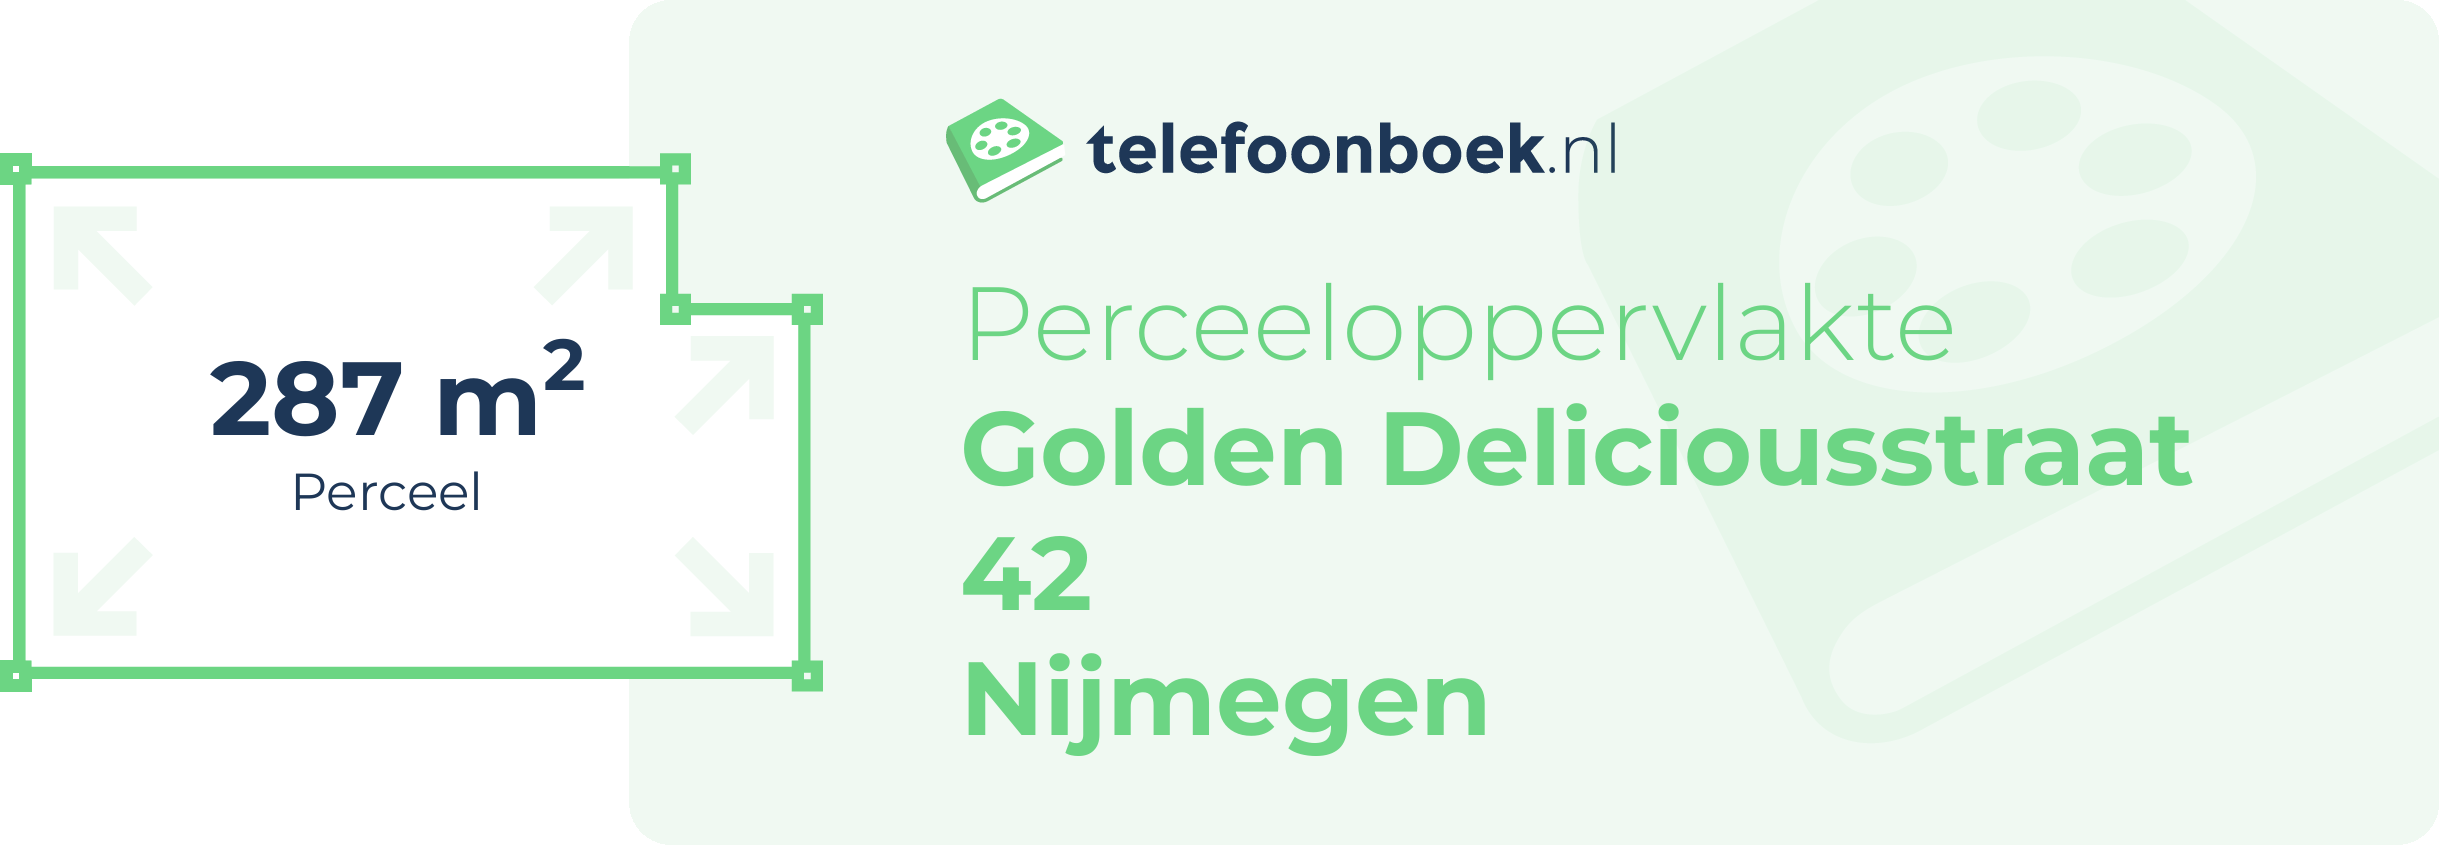 Perceeloppervlakte Golden Deliciousstraat 42 Nijmegen